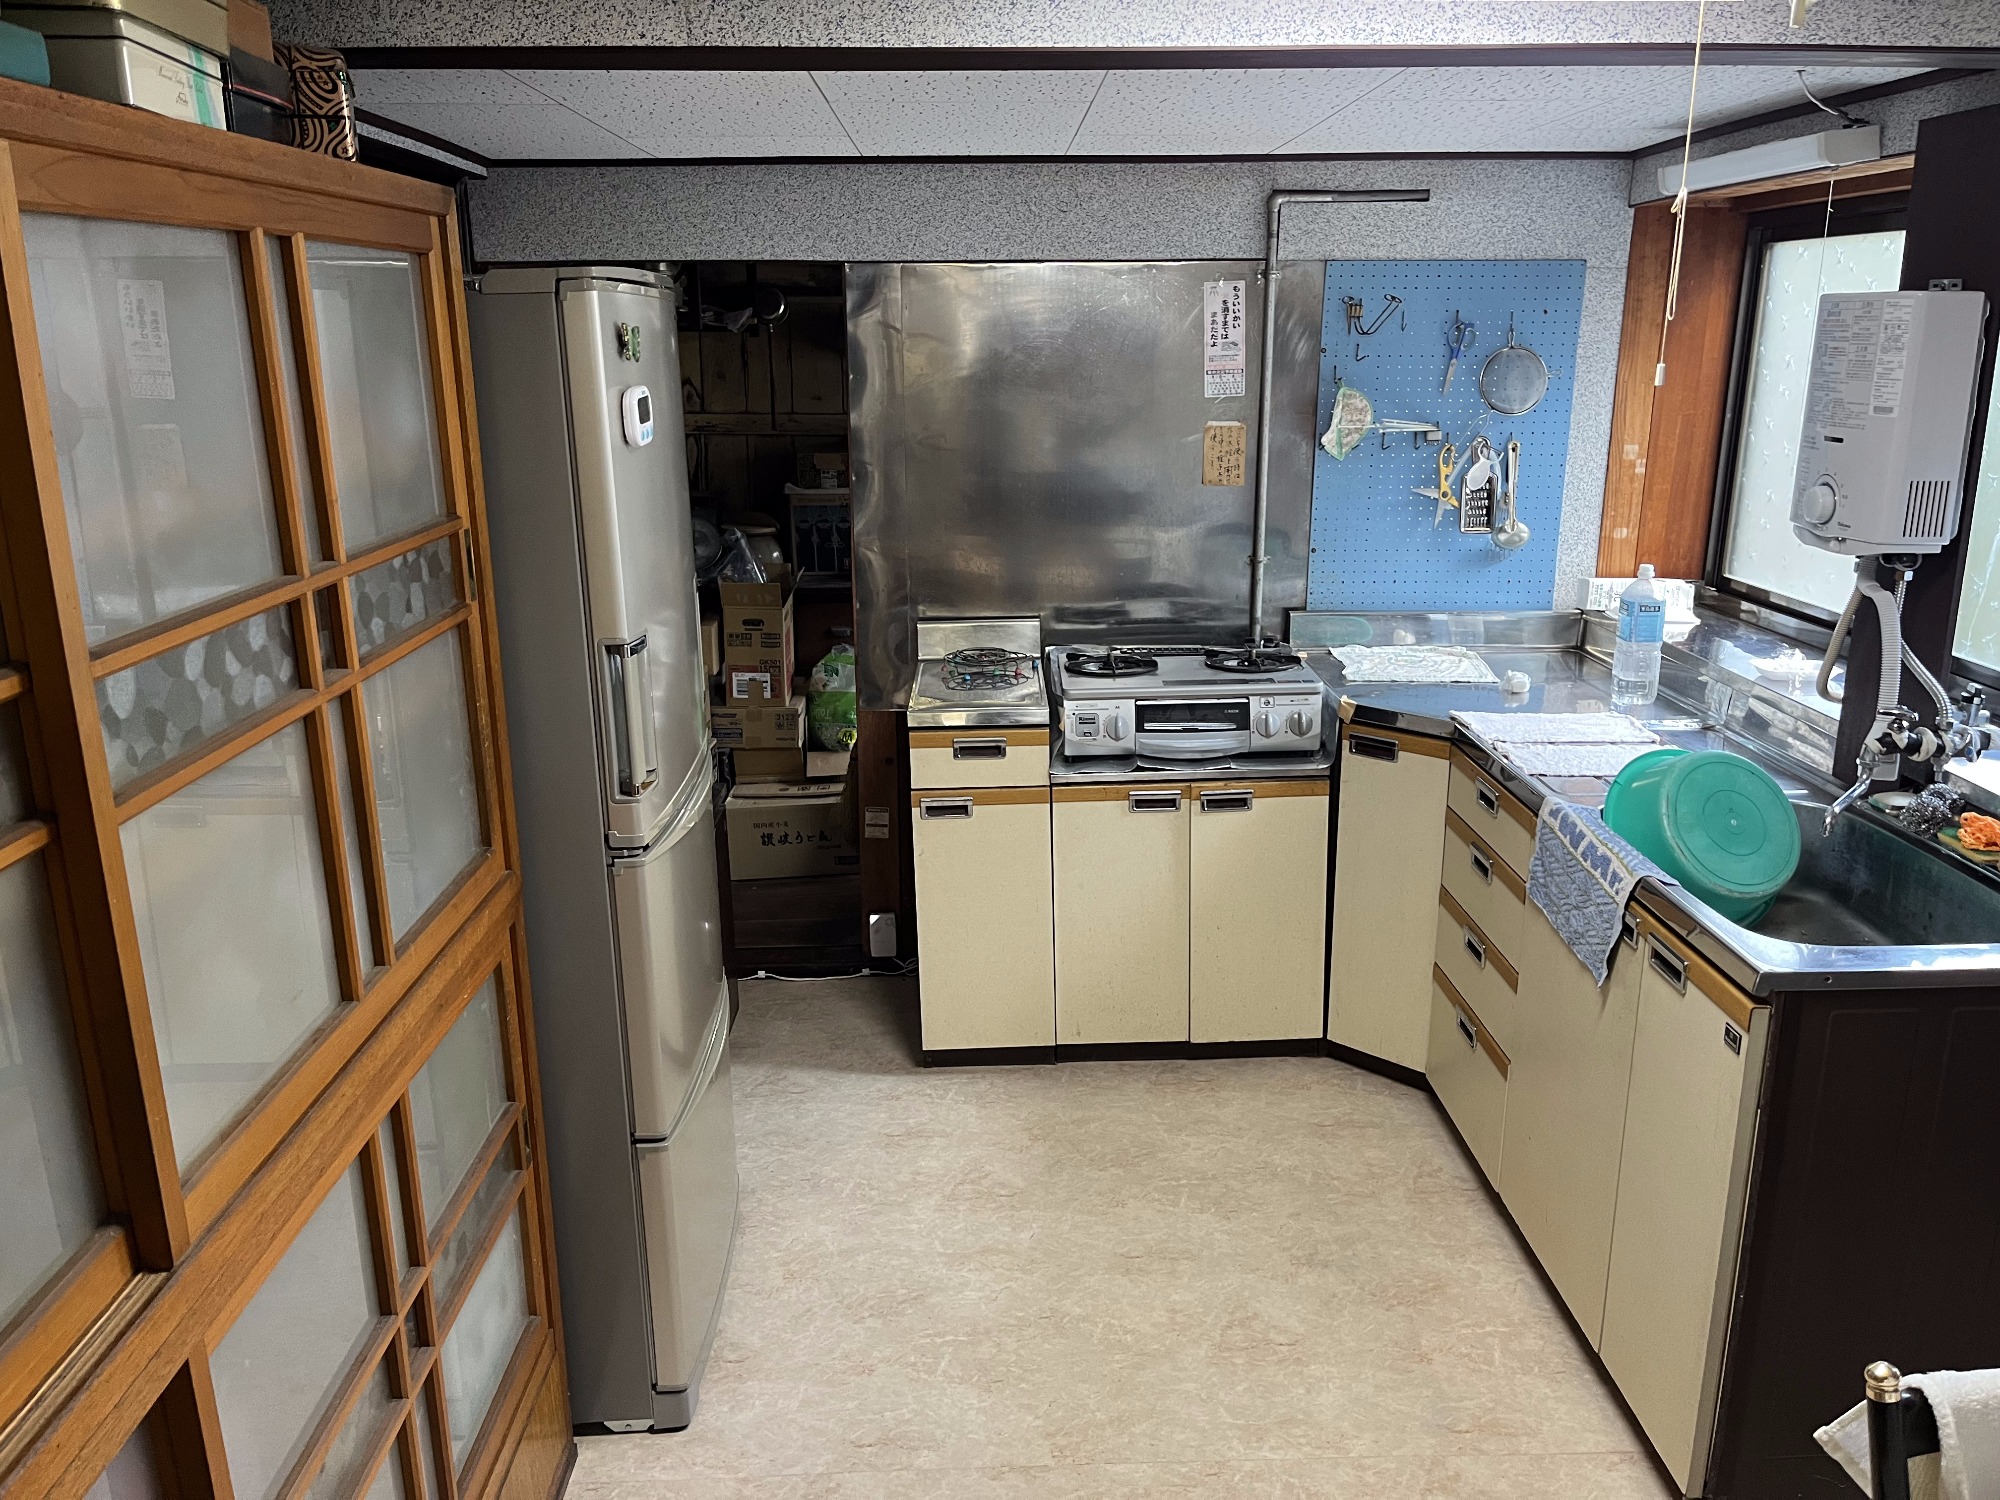 左側に食器棚、冷蔵庫があり、正面奥にガスコンロ、右側に流し台、湯沸かし器、サッシ窓枠がある台所の写真